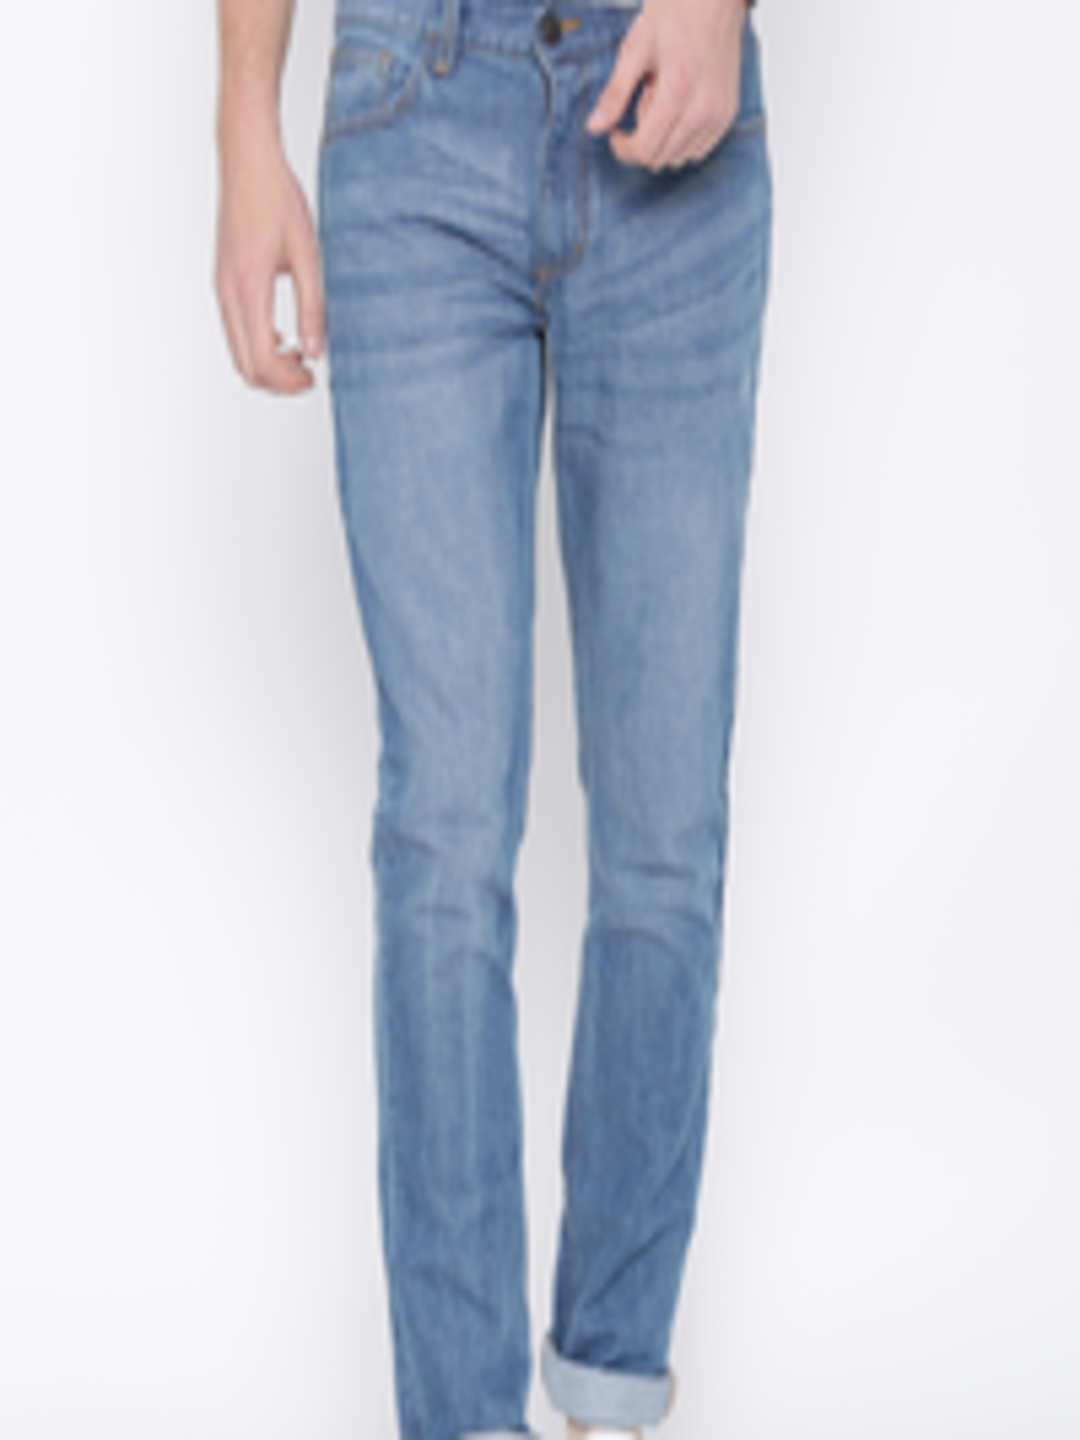 Buy Highlander Blue Jeans - Jeans for Men 1374912 | Myntra